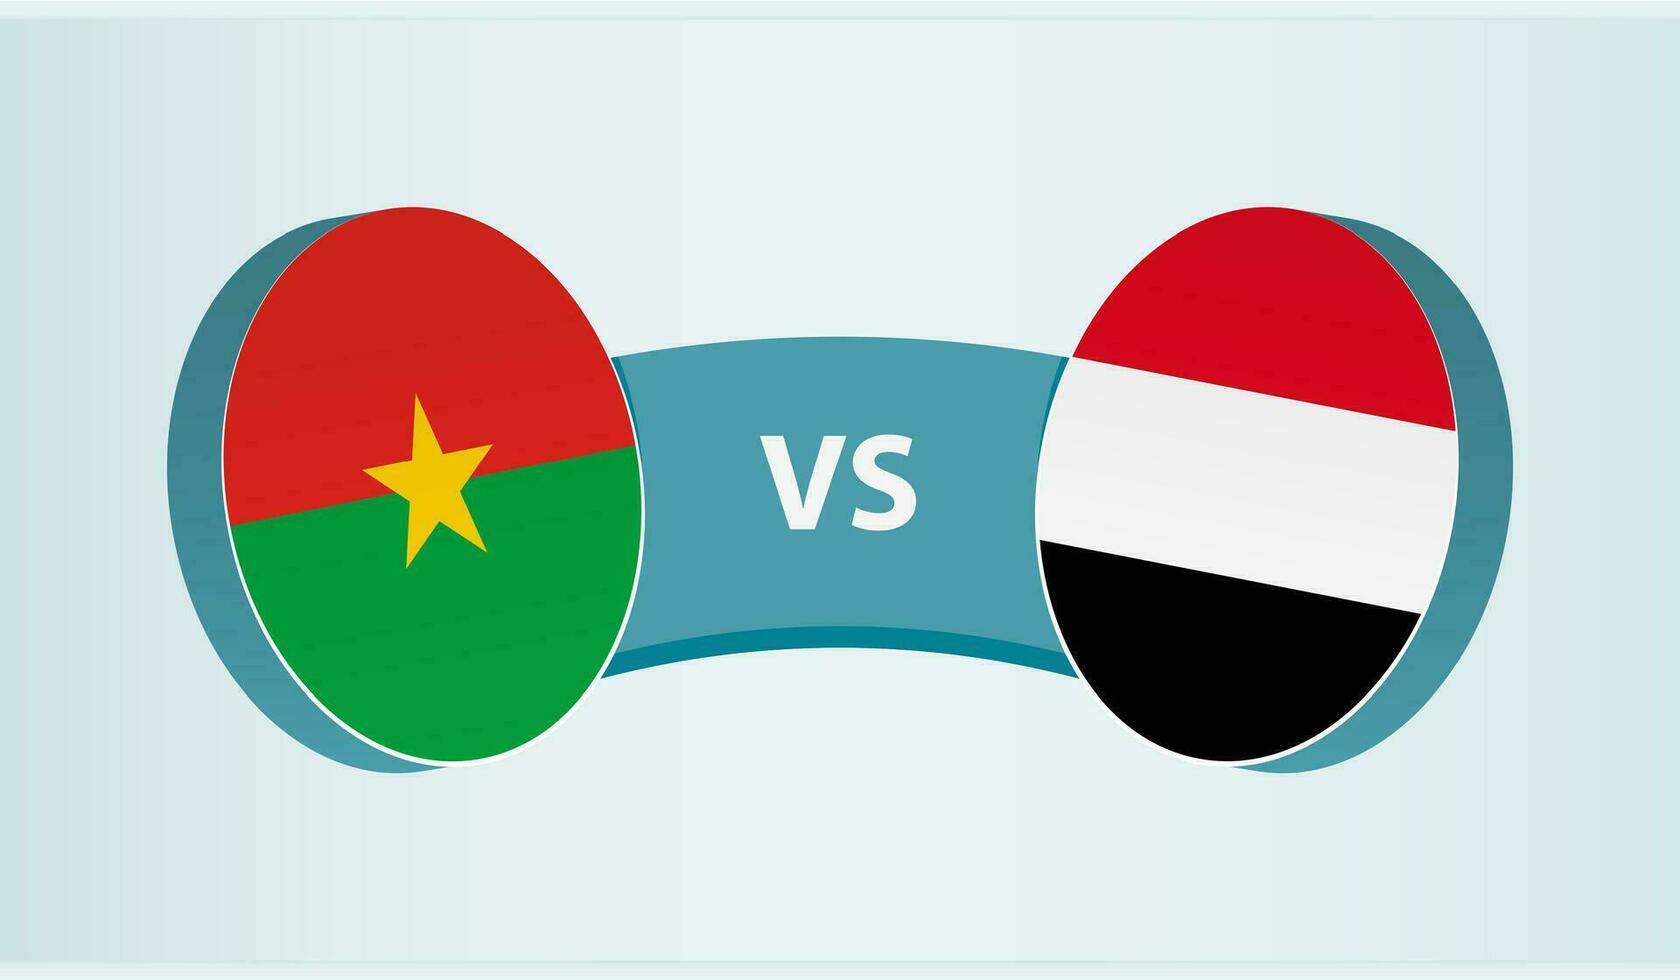 burkina faso versus Yemen, equipo Deportes competencia concepto. vector